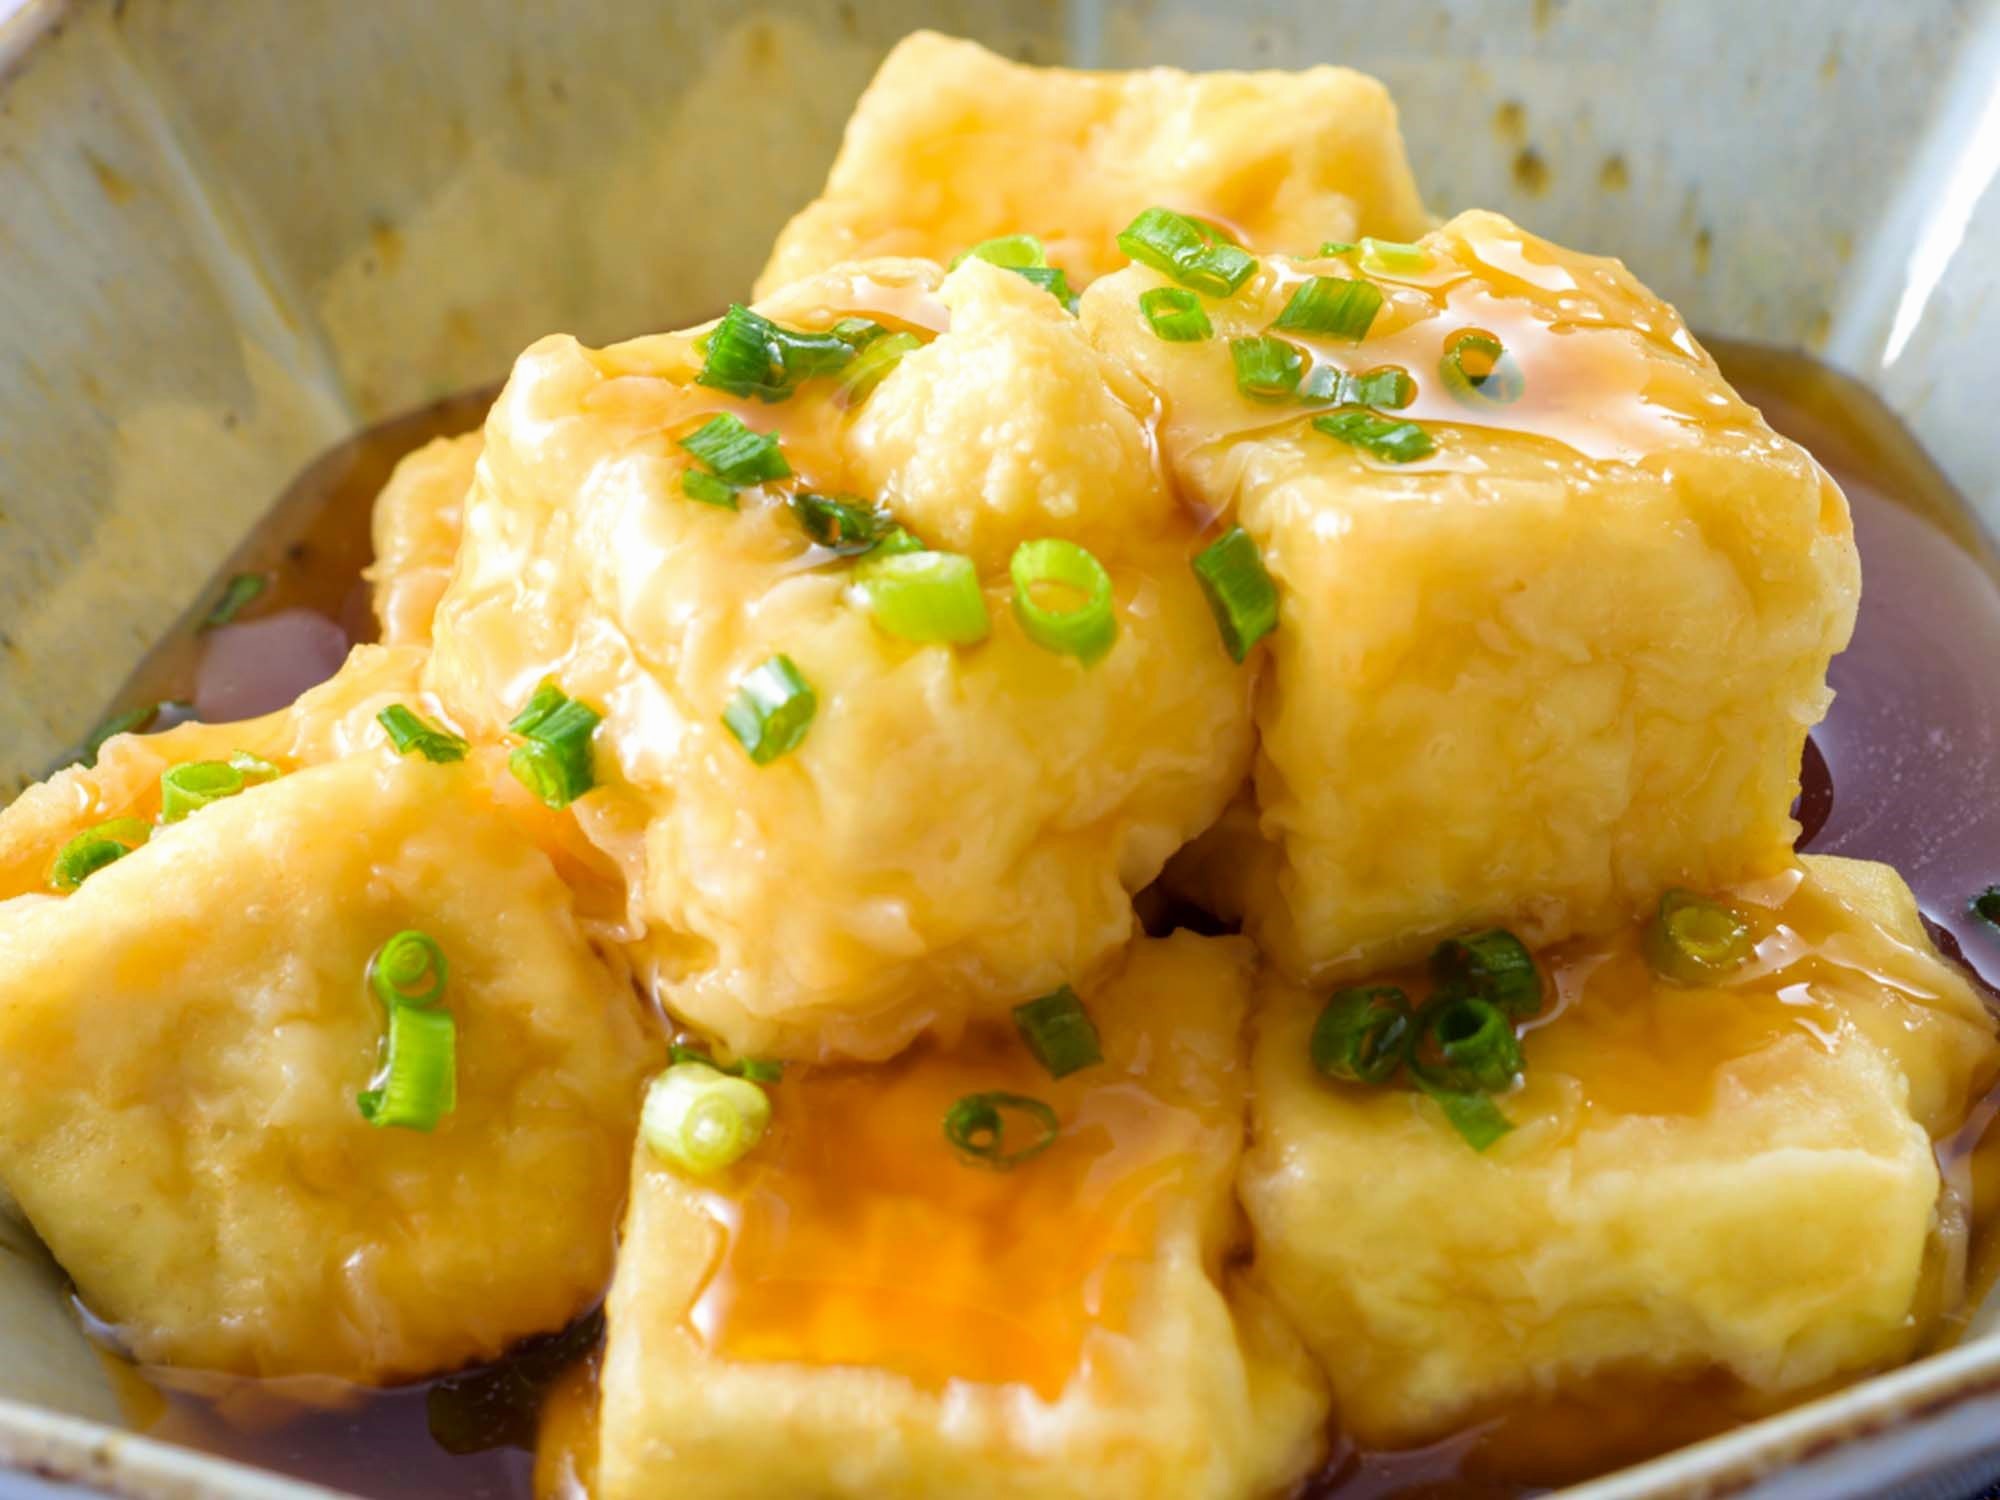 「カンタン酢」でさっぱり揚げ出し豆腐